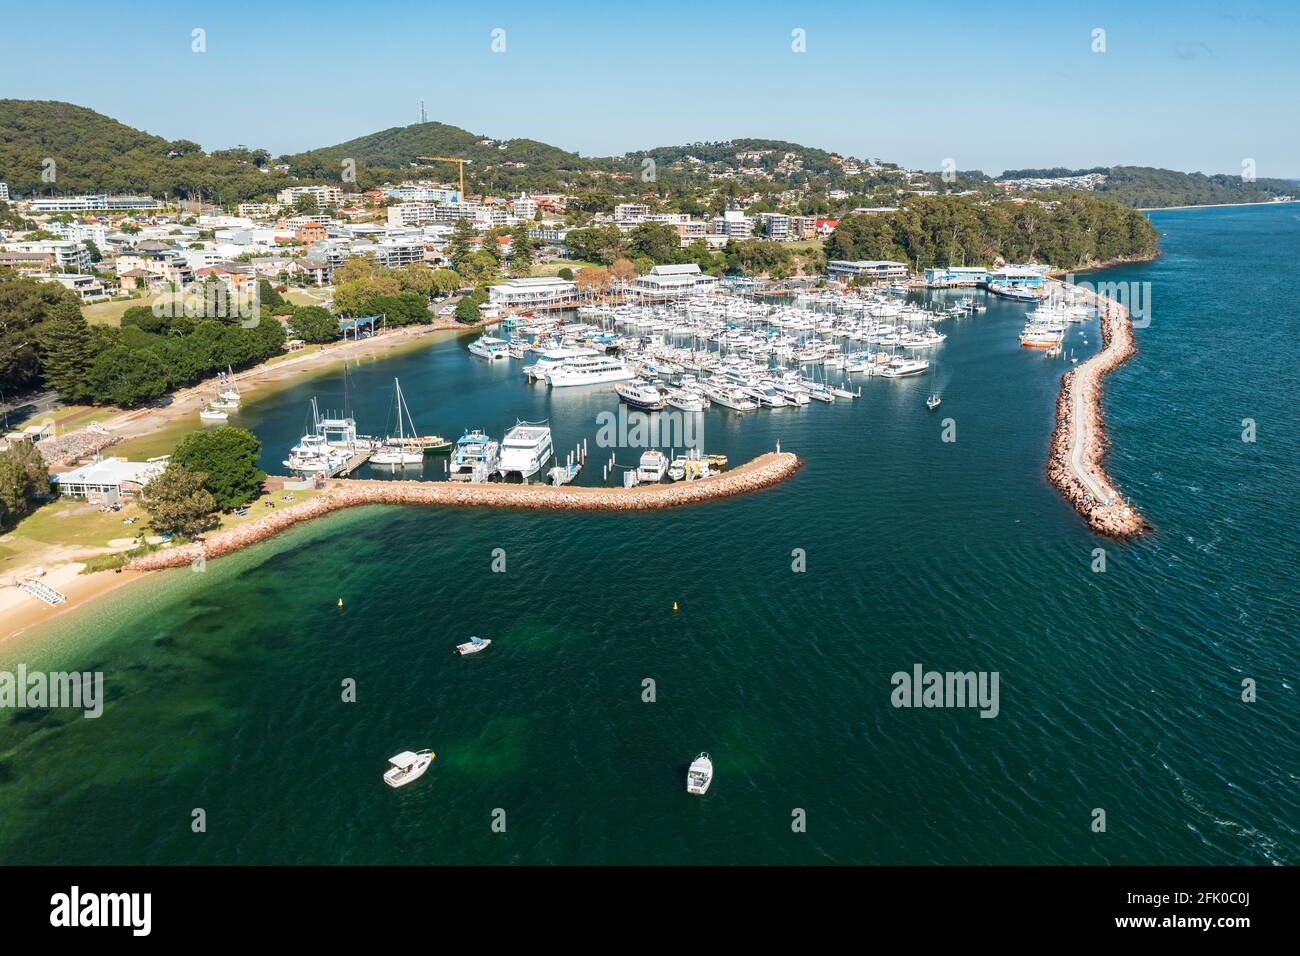 Vista aérea del puerto deportivo de la bahía Nelson, el rompeolas y la ciudad, con las aguas acuáticas de Port Stephens, Australia. Foto de stock